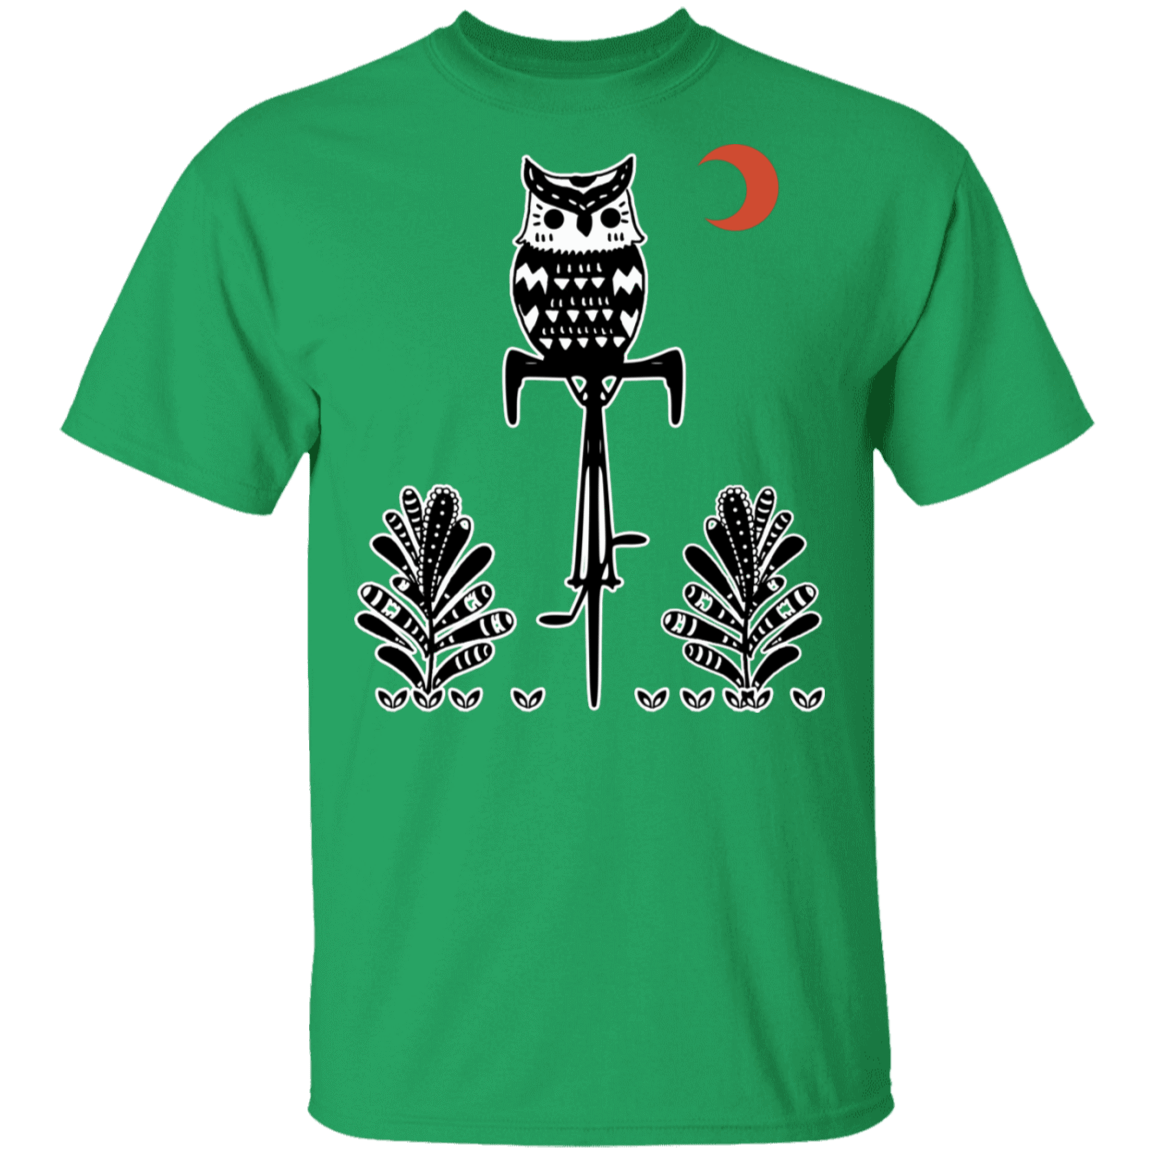 T-Shirts Irish Green / S Barn Owl On A Bike T-Shirt